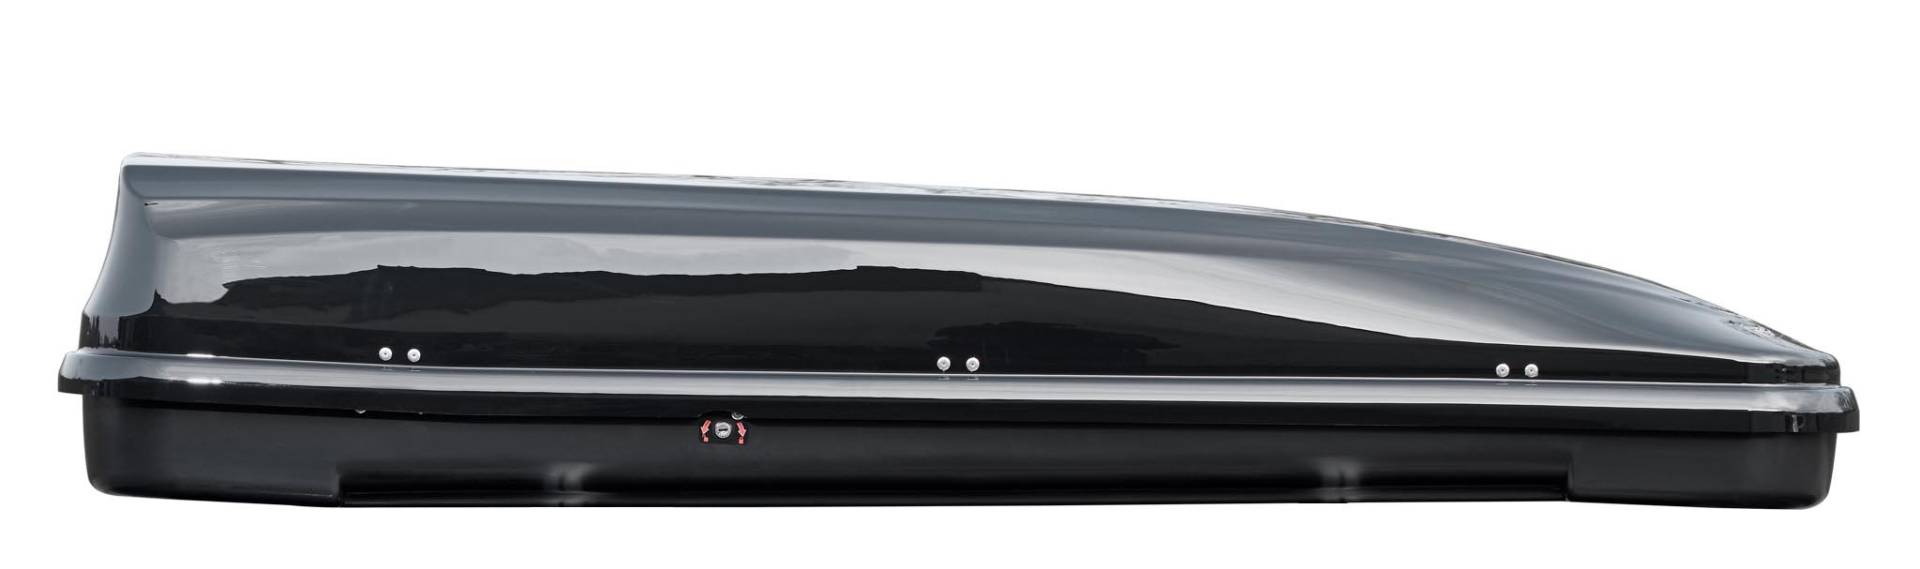 Dachbox Skibox lang 225 x 65 x 43 cm VDP-FL460 Black schwarz glänzend 460 Liter von VDP